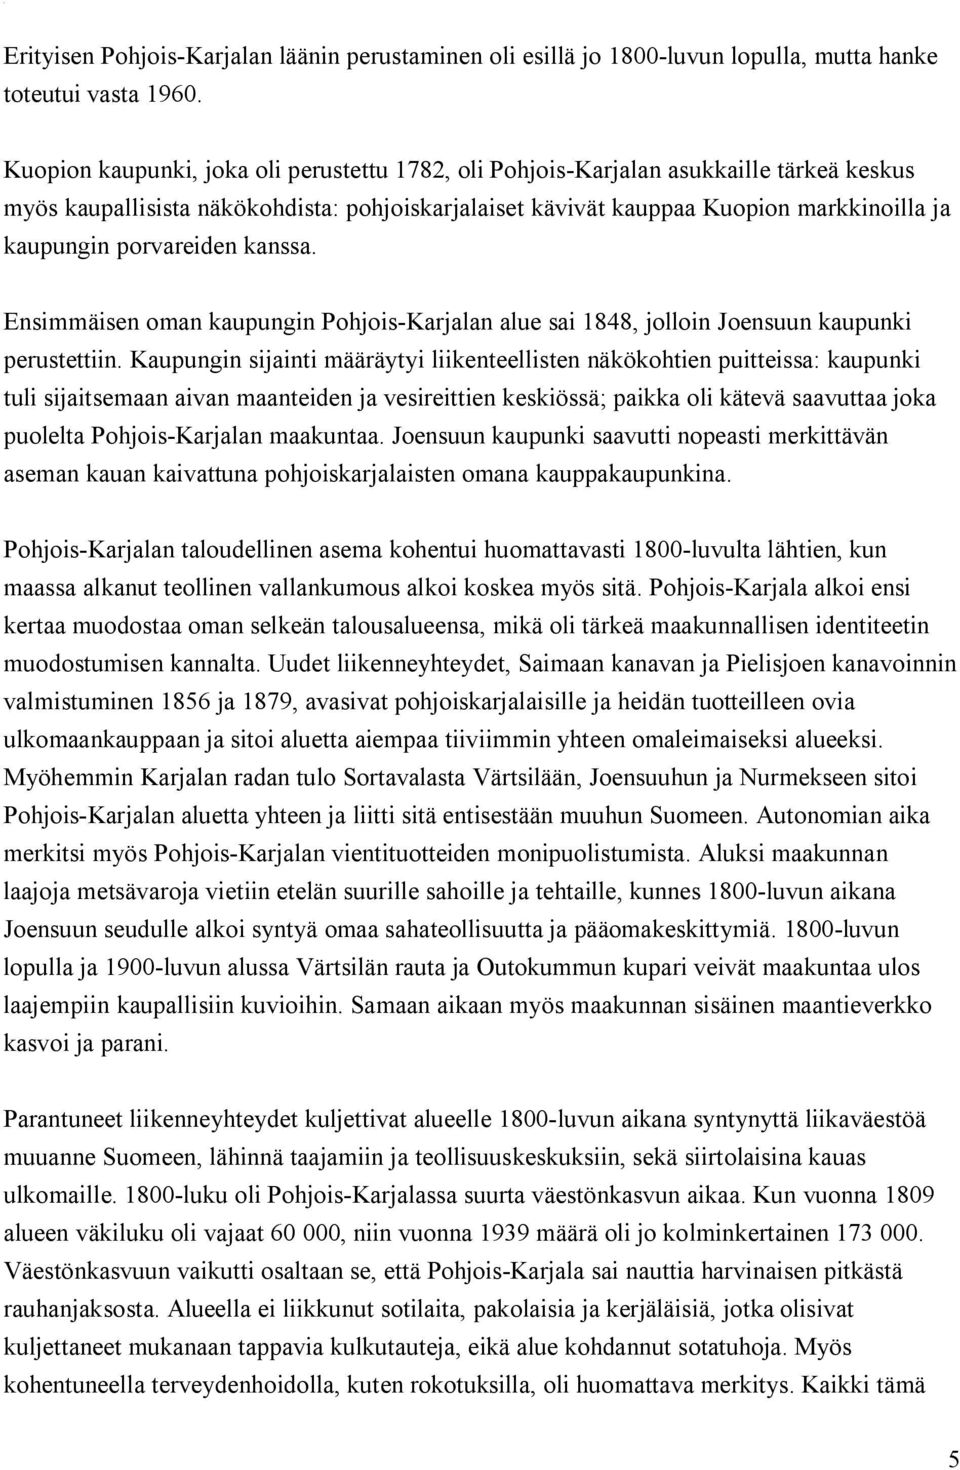 porvareiden kanssa. Ensimmäisen oman kaupungin Pohjois-Karjalan alue sai 1848, jolloin Joensuun kaupunki perustettiin.